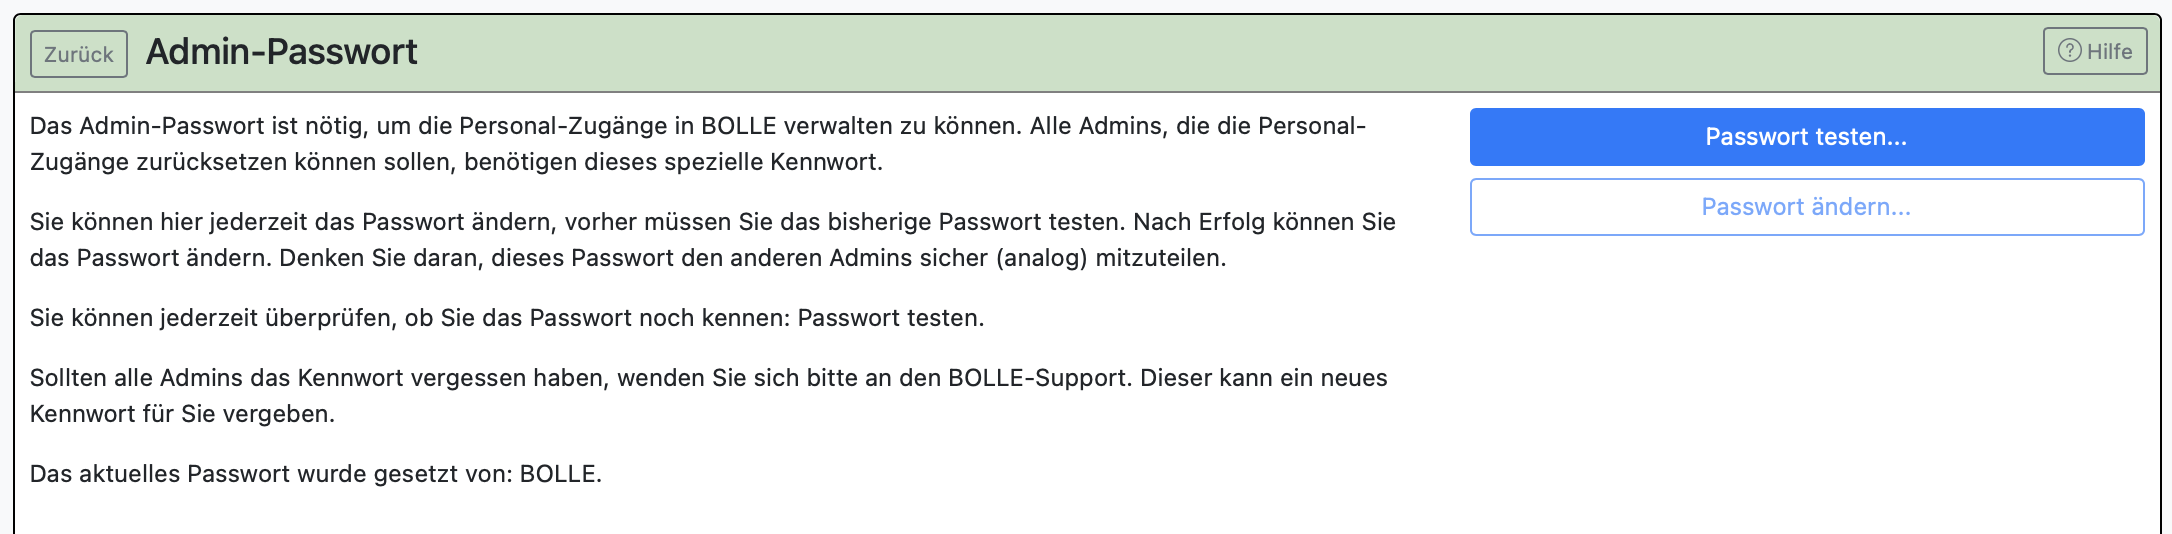 Admin-Passwort 2.png